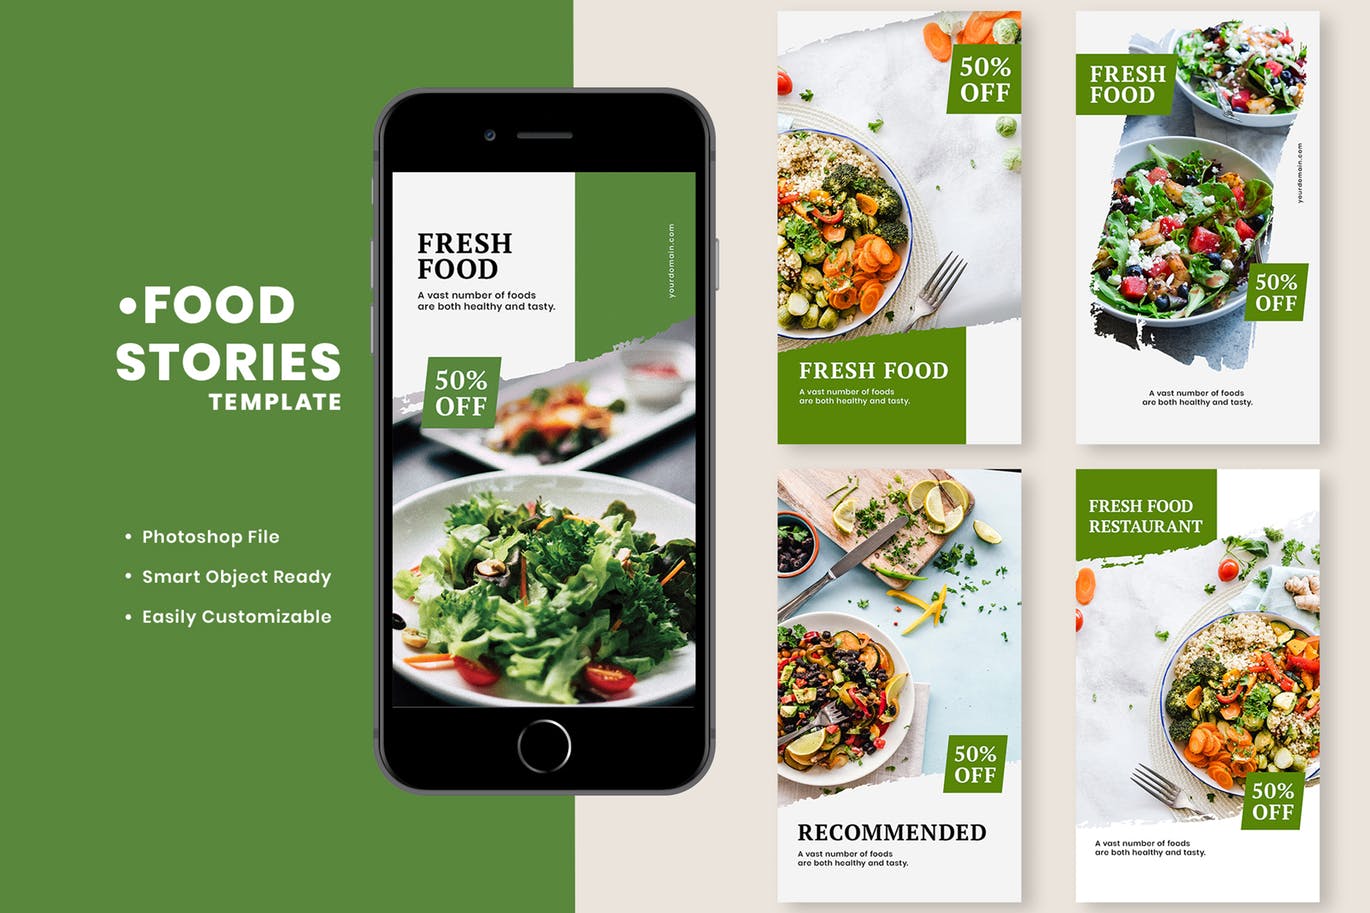 健康饮食餐厅推广Instagram故事贴图社交媒体模板 Fresh Food Instagram Stories Template设计素材模板